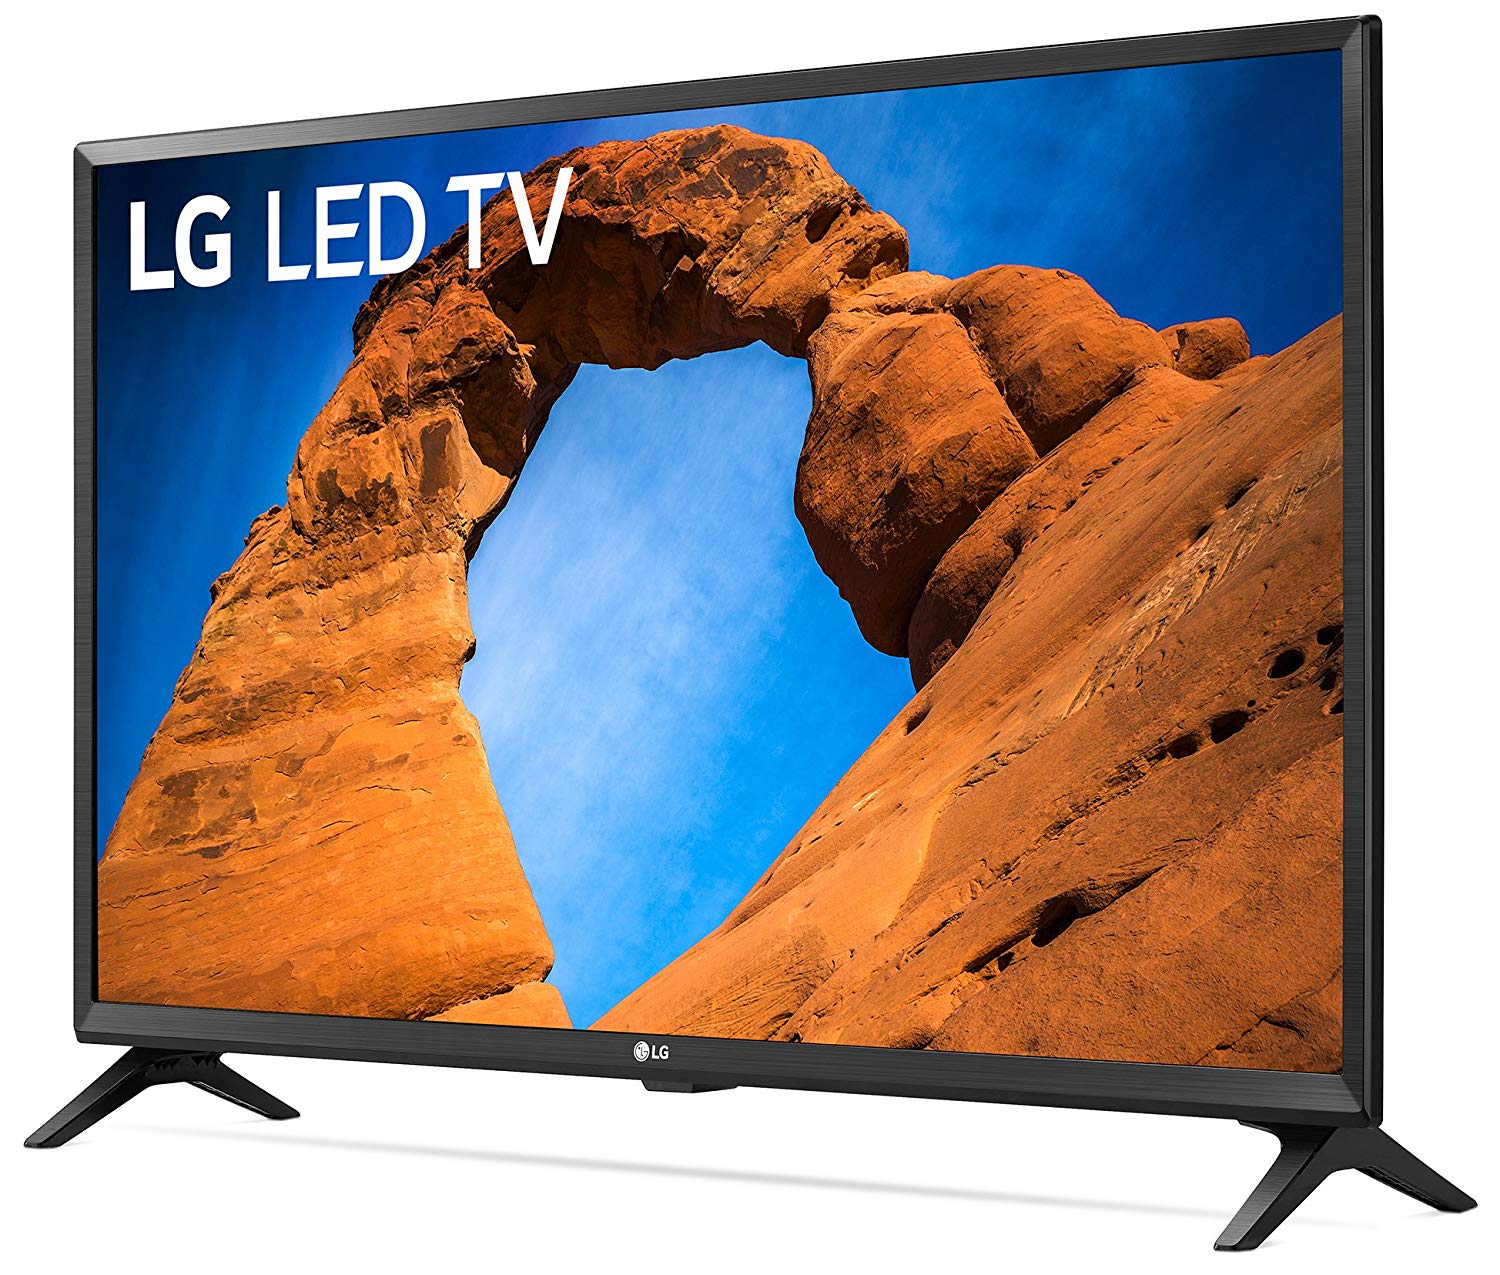 Lg Electronics 32lk540bpua 32 Inch 720p Smart Led Tv 2018 Model Big